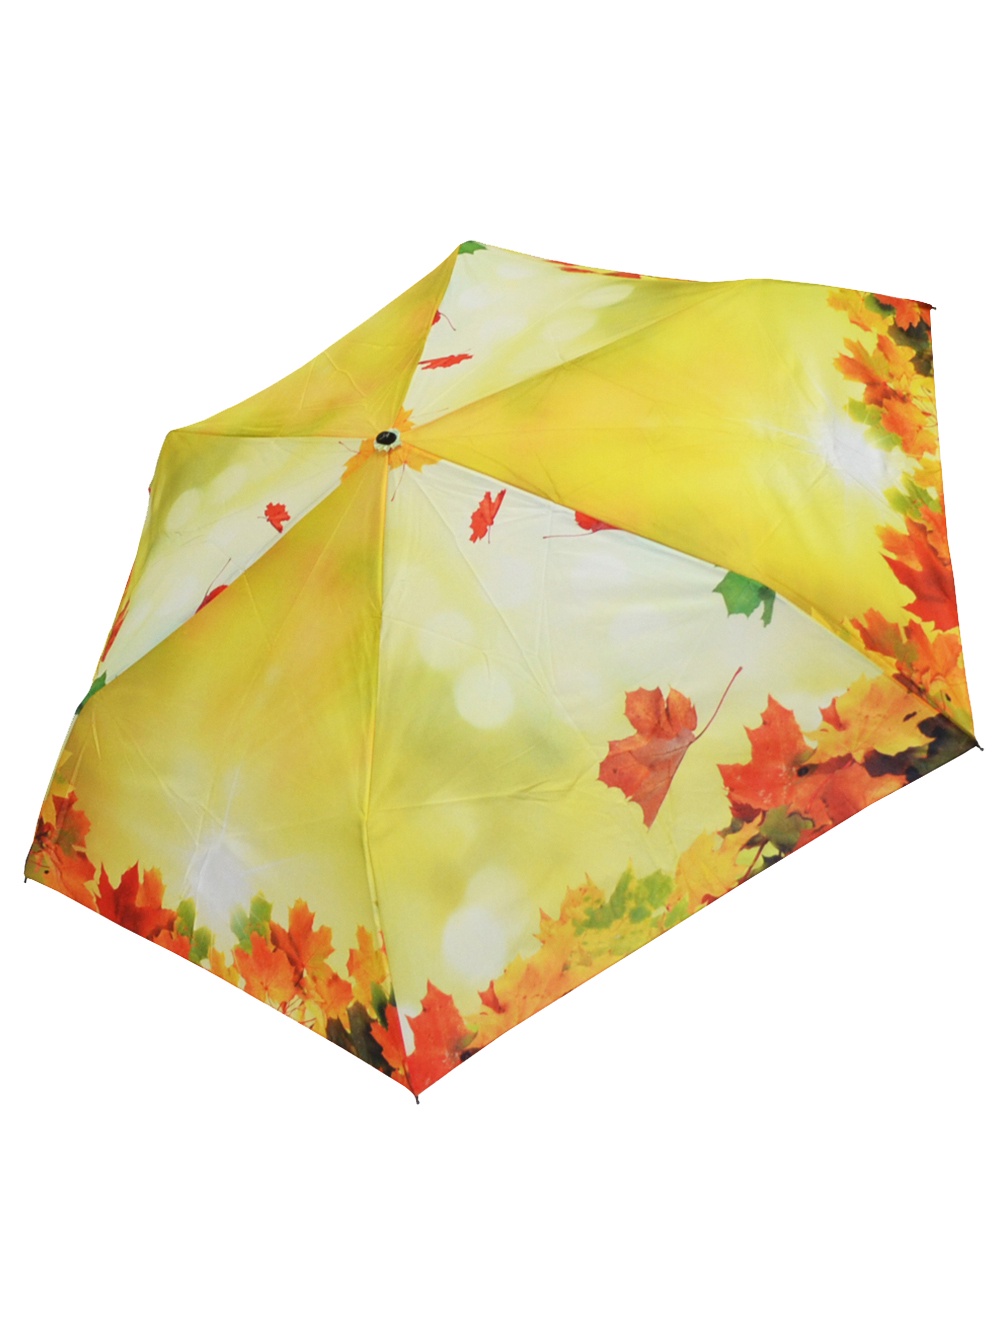 фото Зонт Ame Yoke Umbrella (Japan) Ok-54-6, желтый, оранжевый